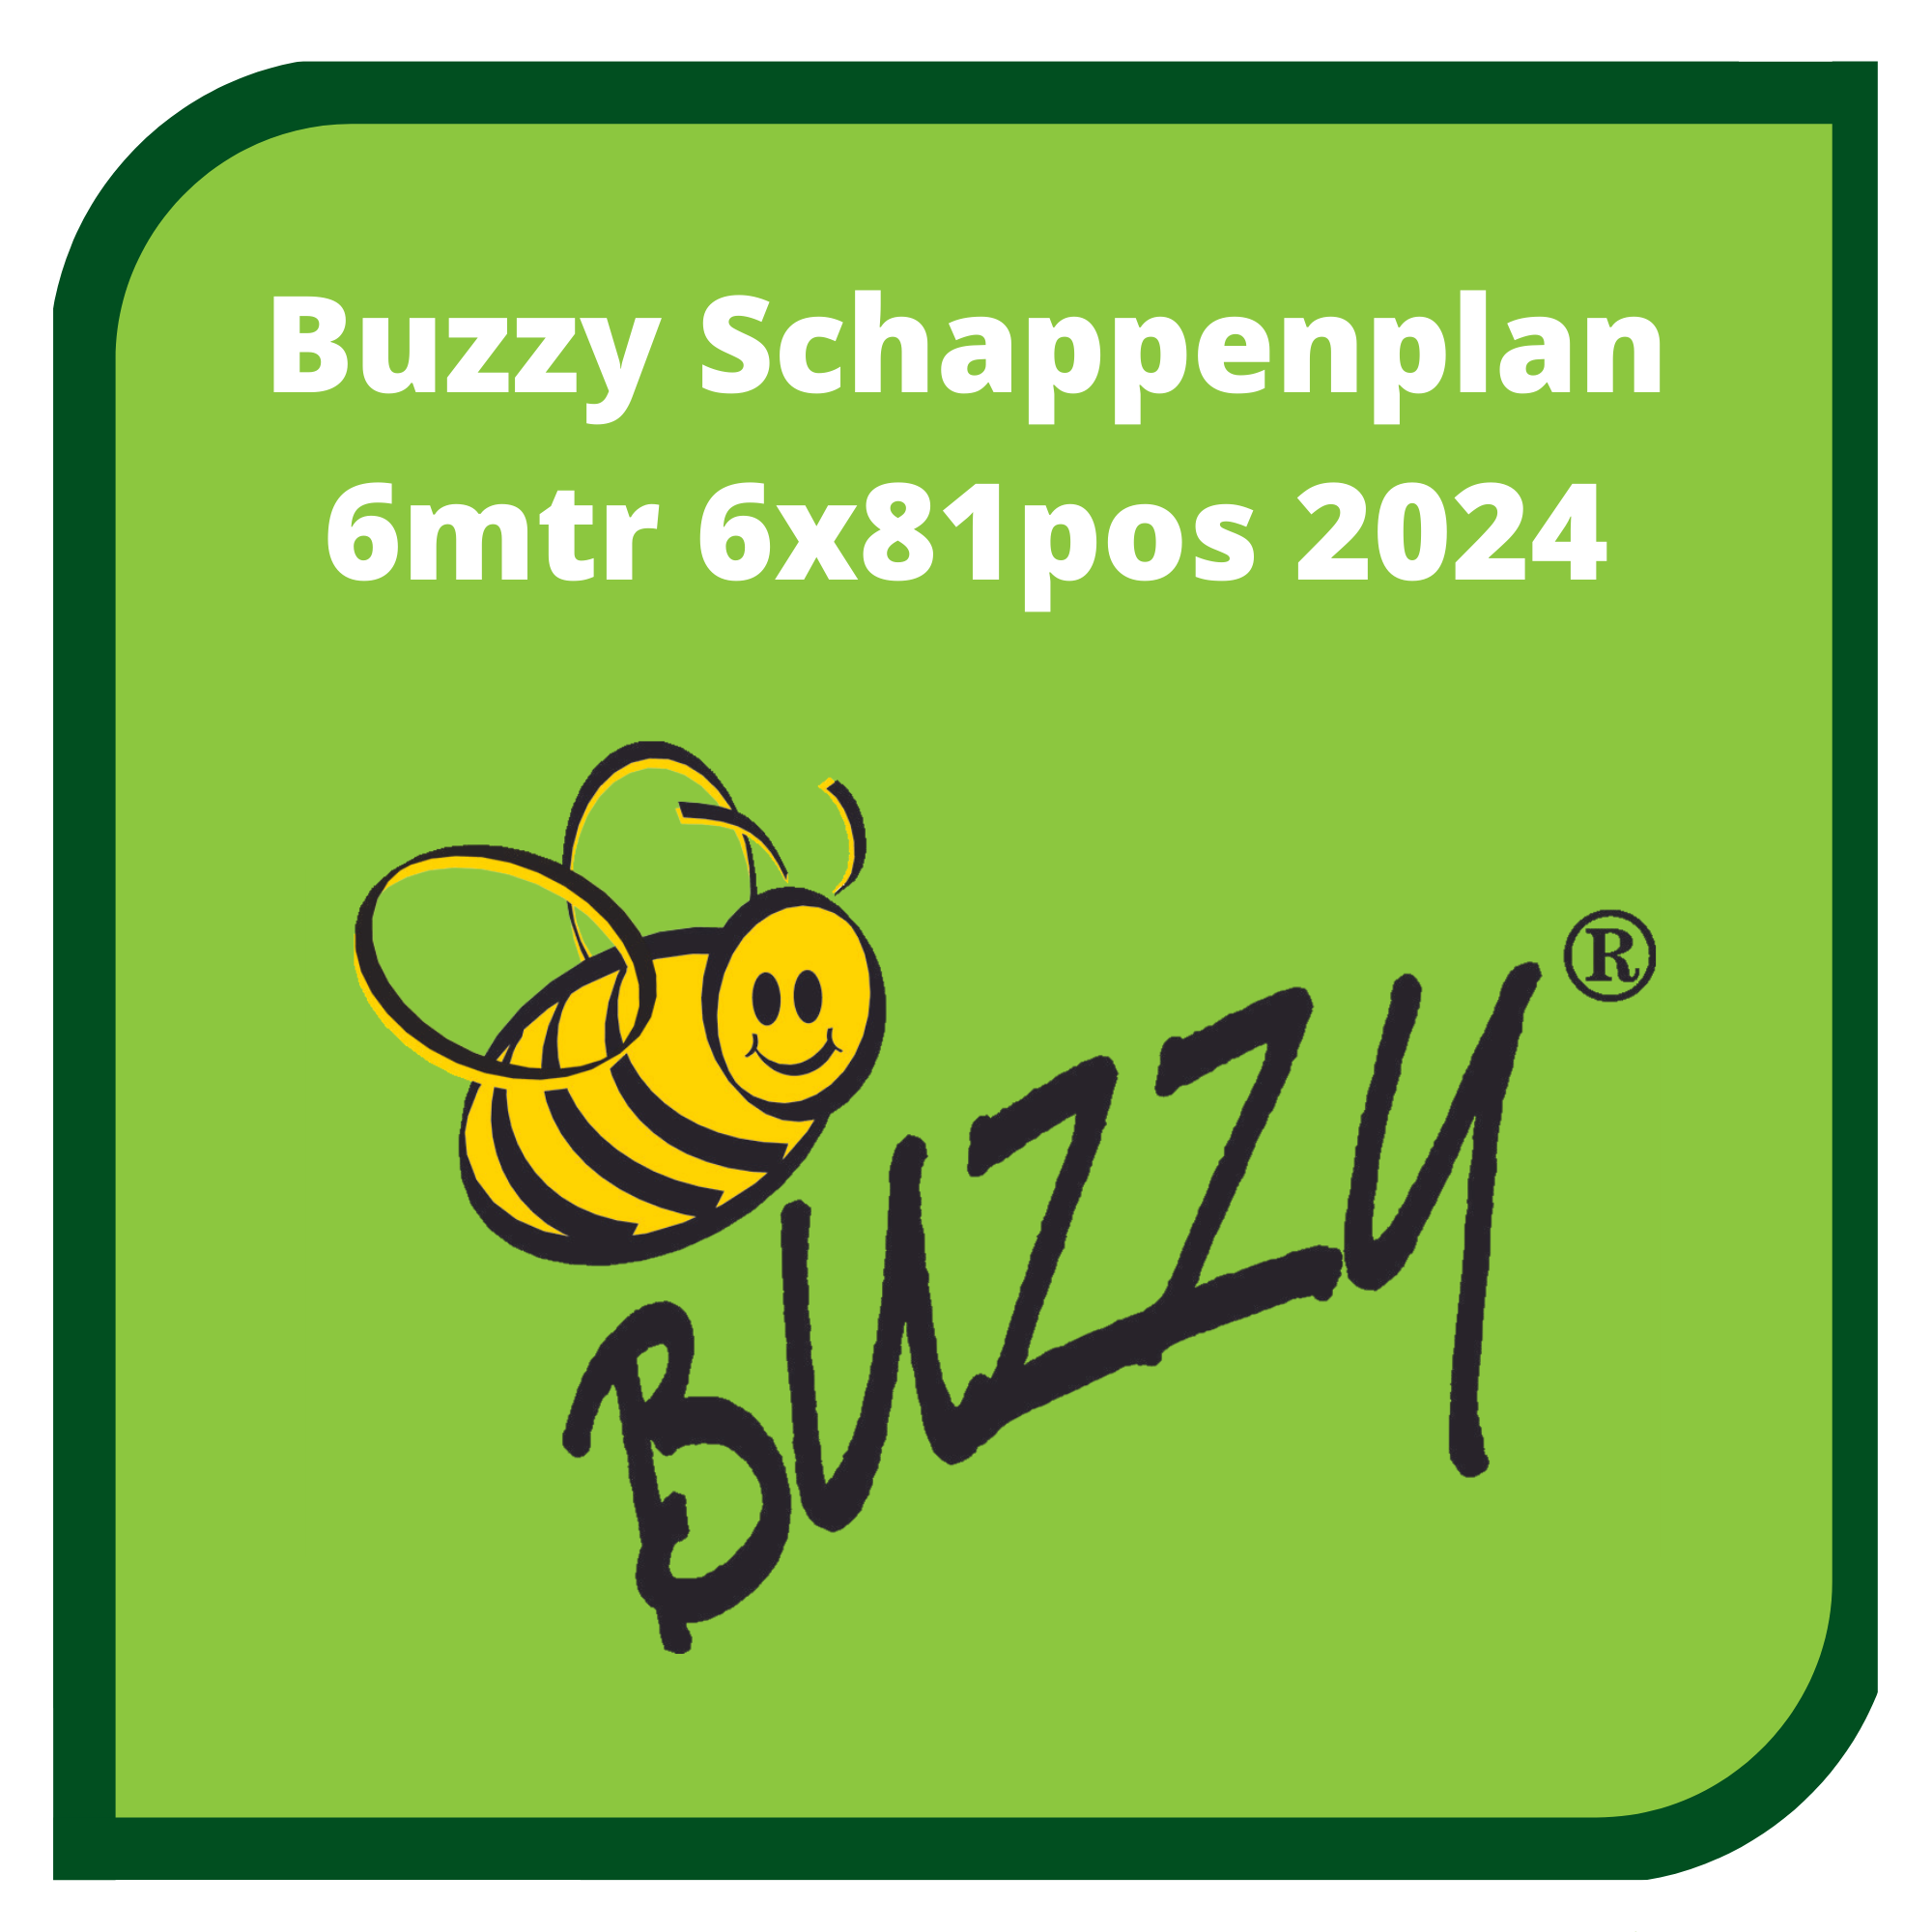 buzzy 6m 2024